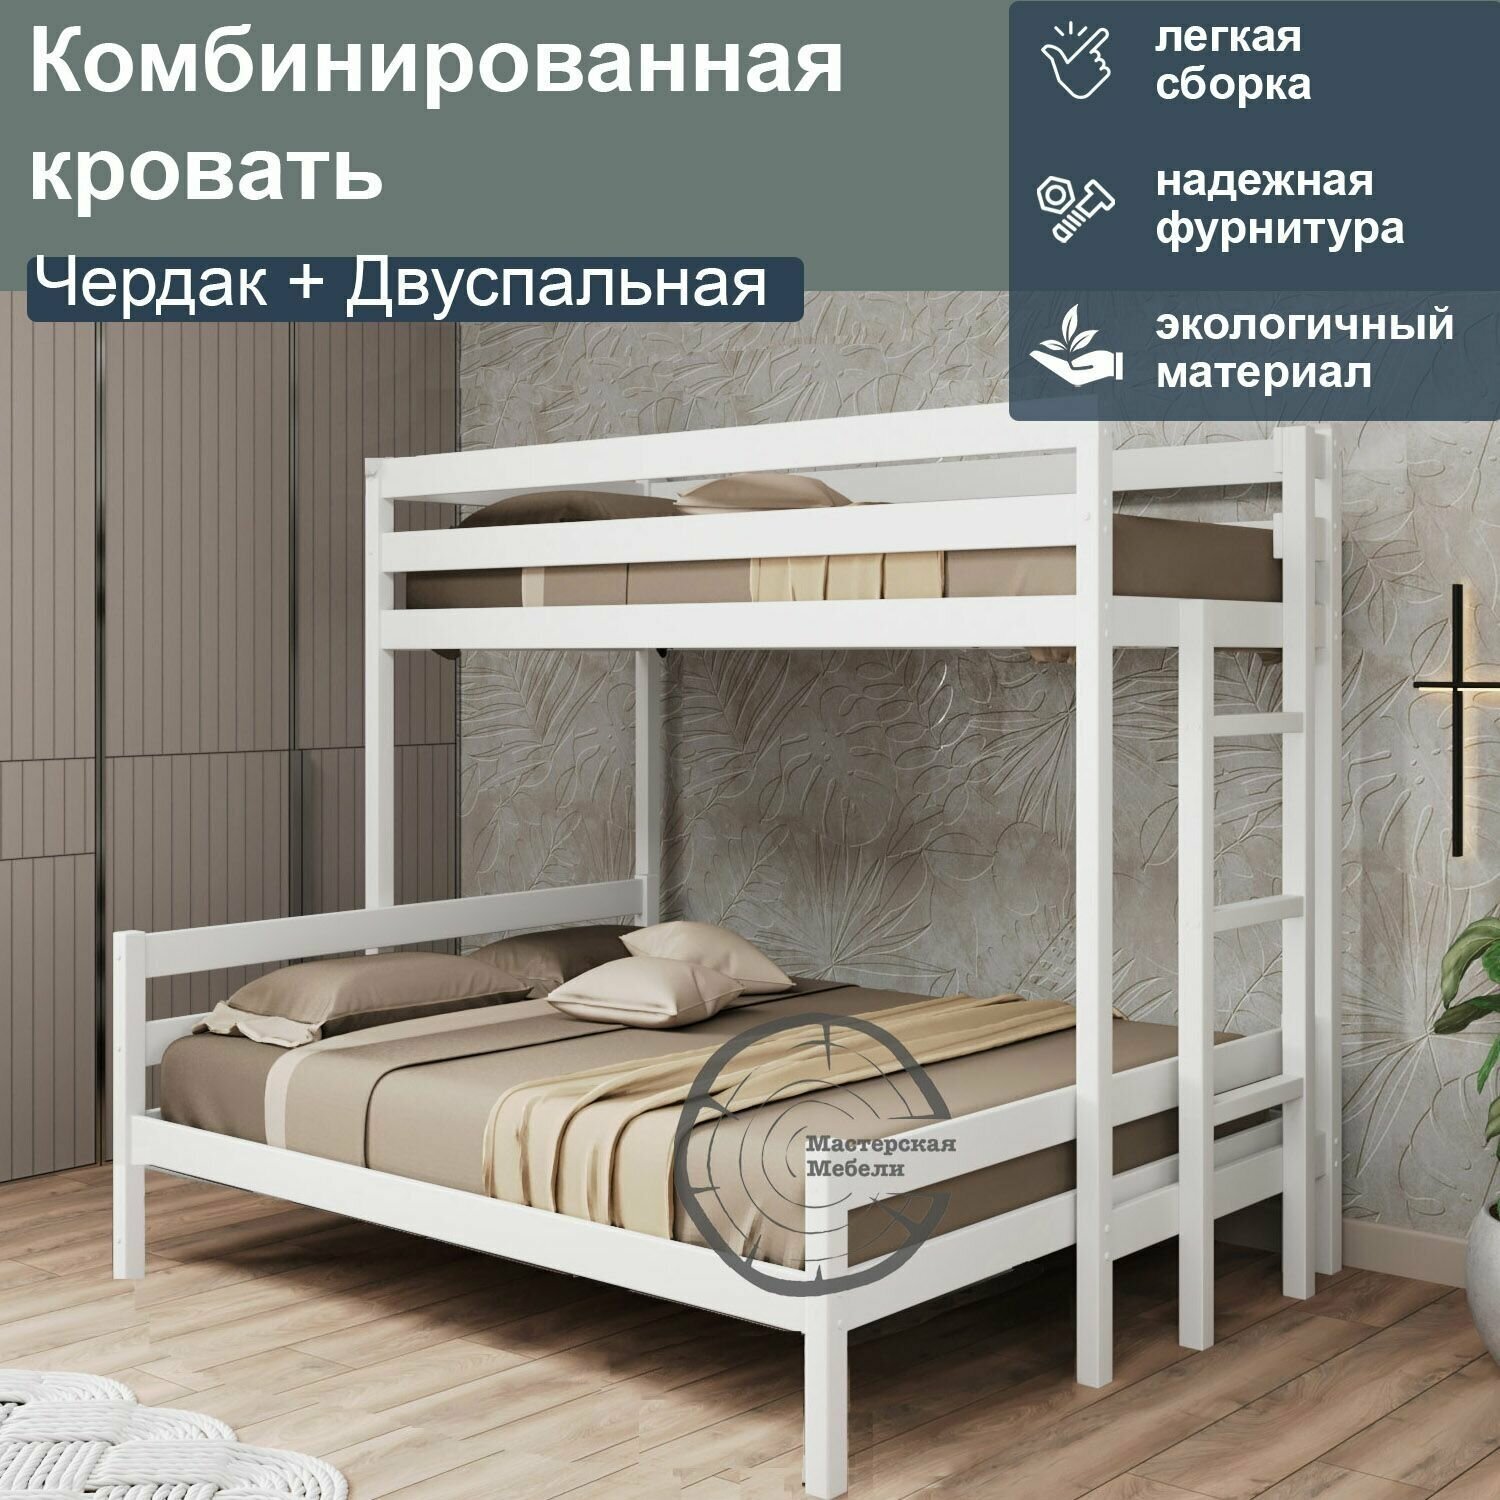 Кровать комбинированная Чердак + Двуспальная, 120, белый